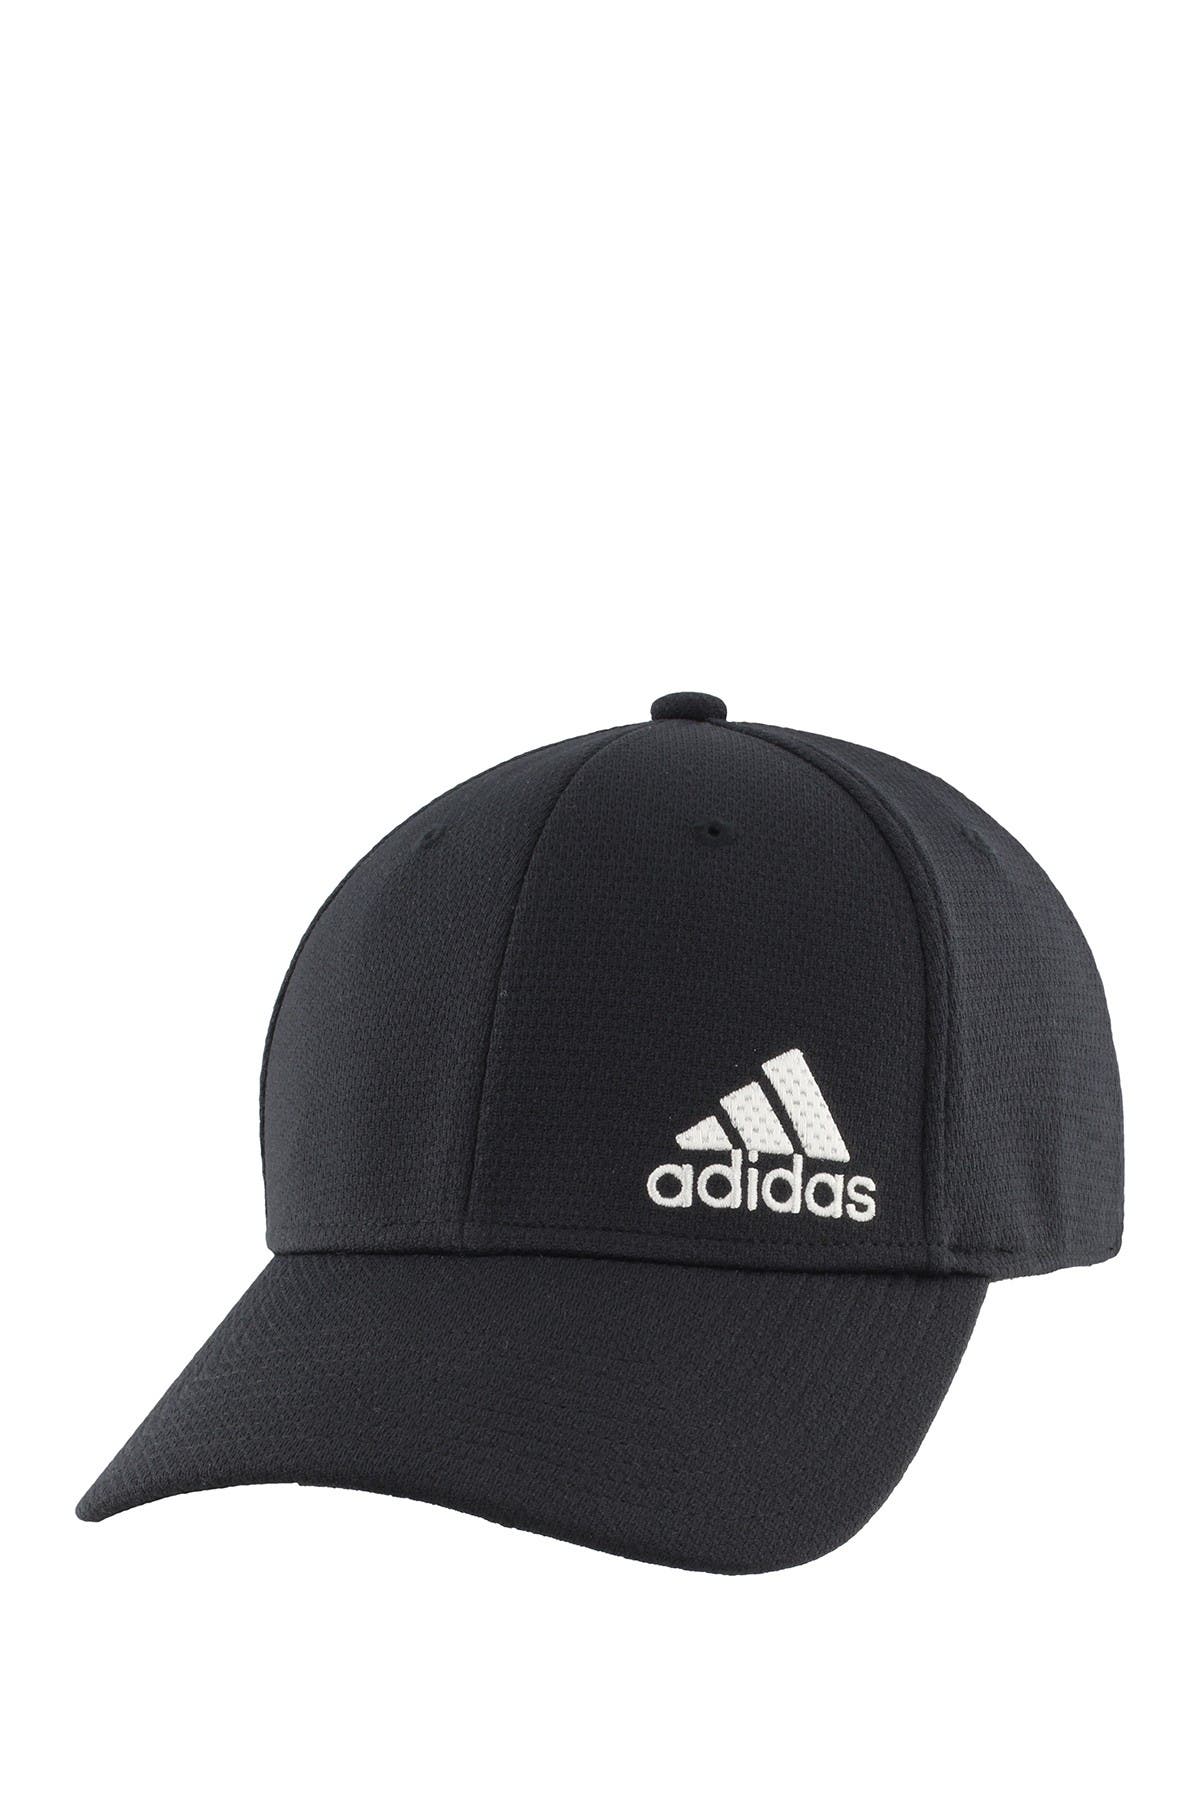 adidas release stretch fit cap